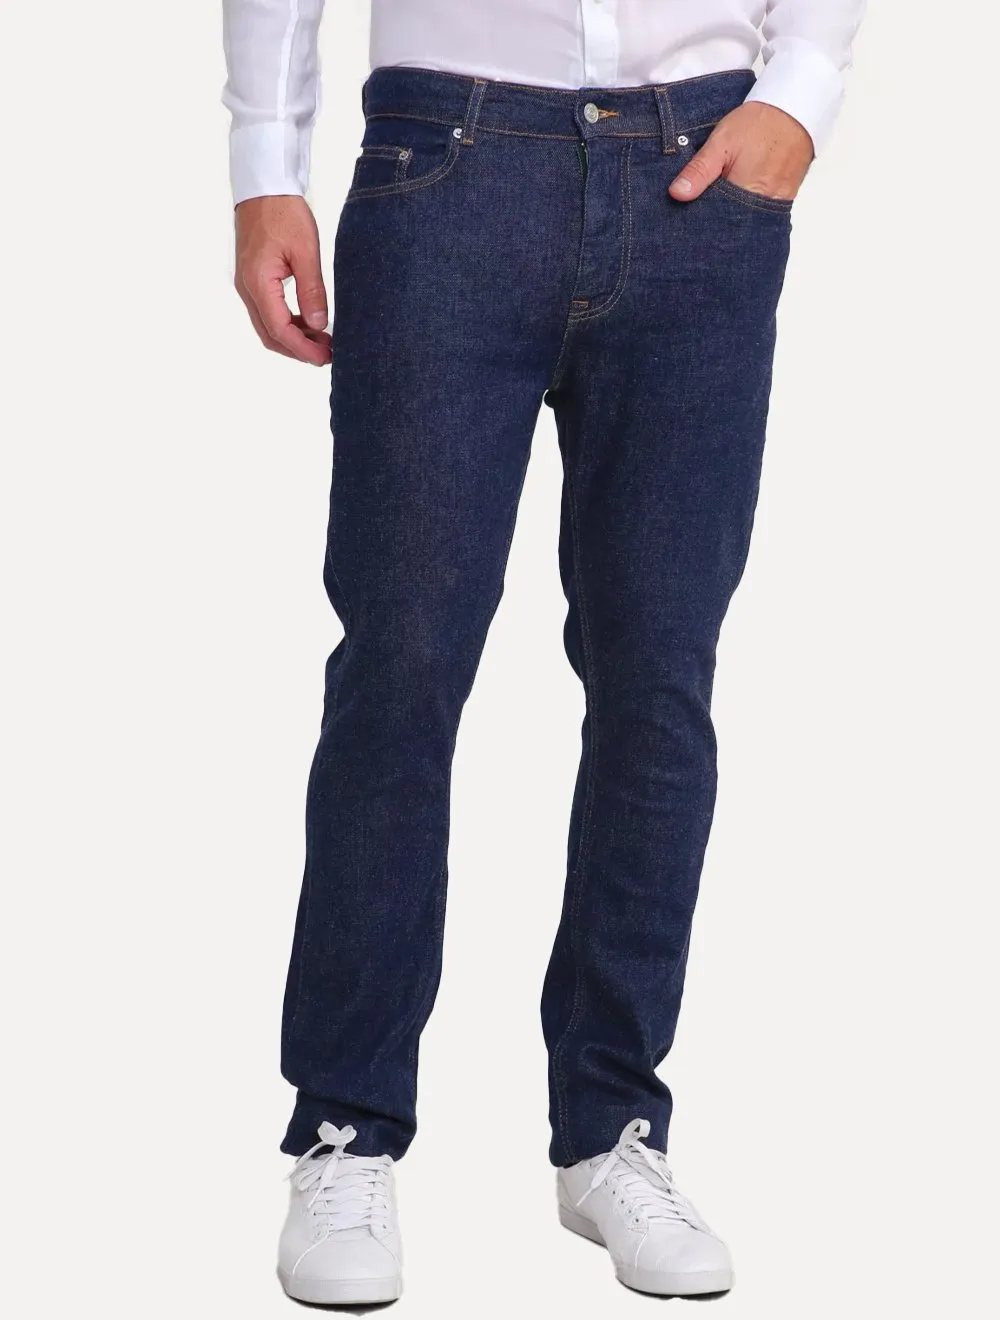 Calça Lacoste Jeans Masculina Slim Fit Cotton Denim Stretch Azul Escuro